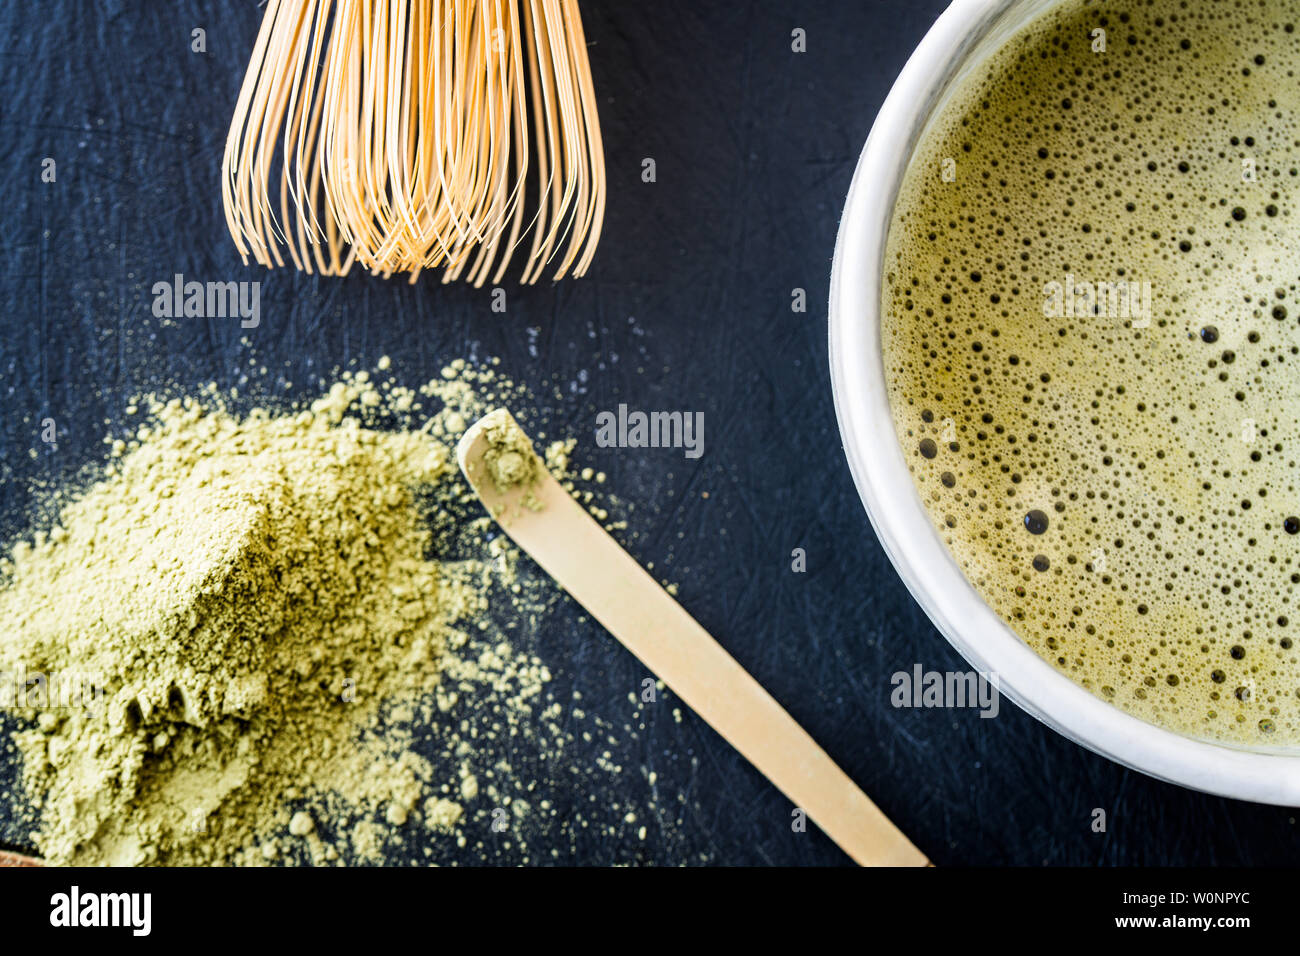 Un gros plan de thé vert matcha dans une tasse, cuillère bambou bambou whist, et le thé vert en poudre Banque D'Images